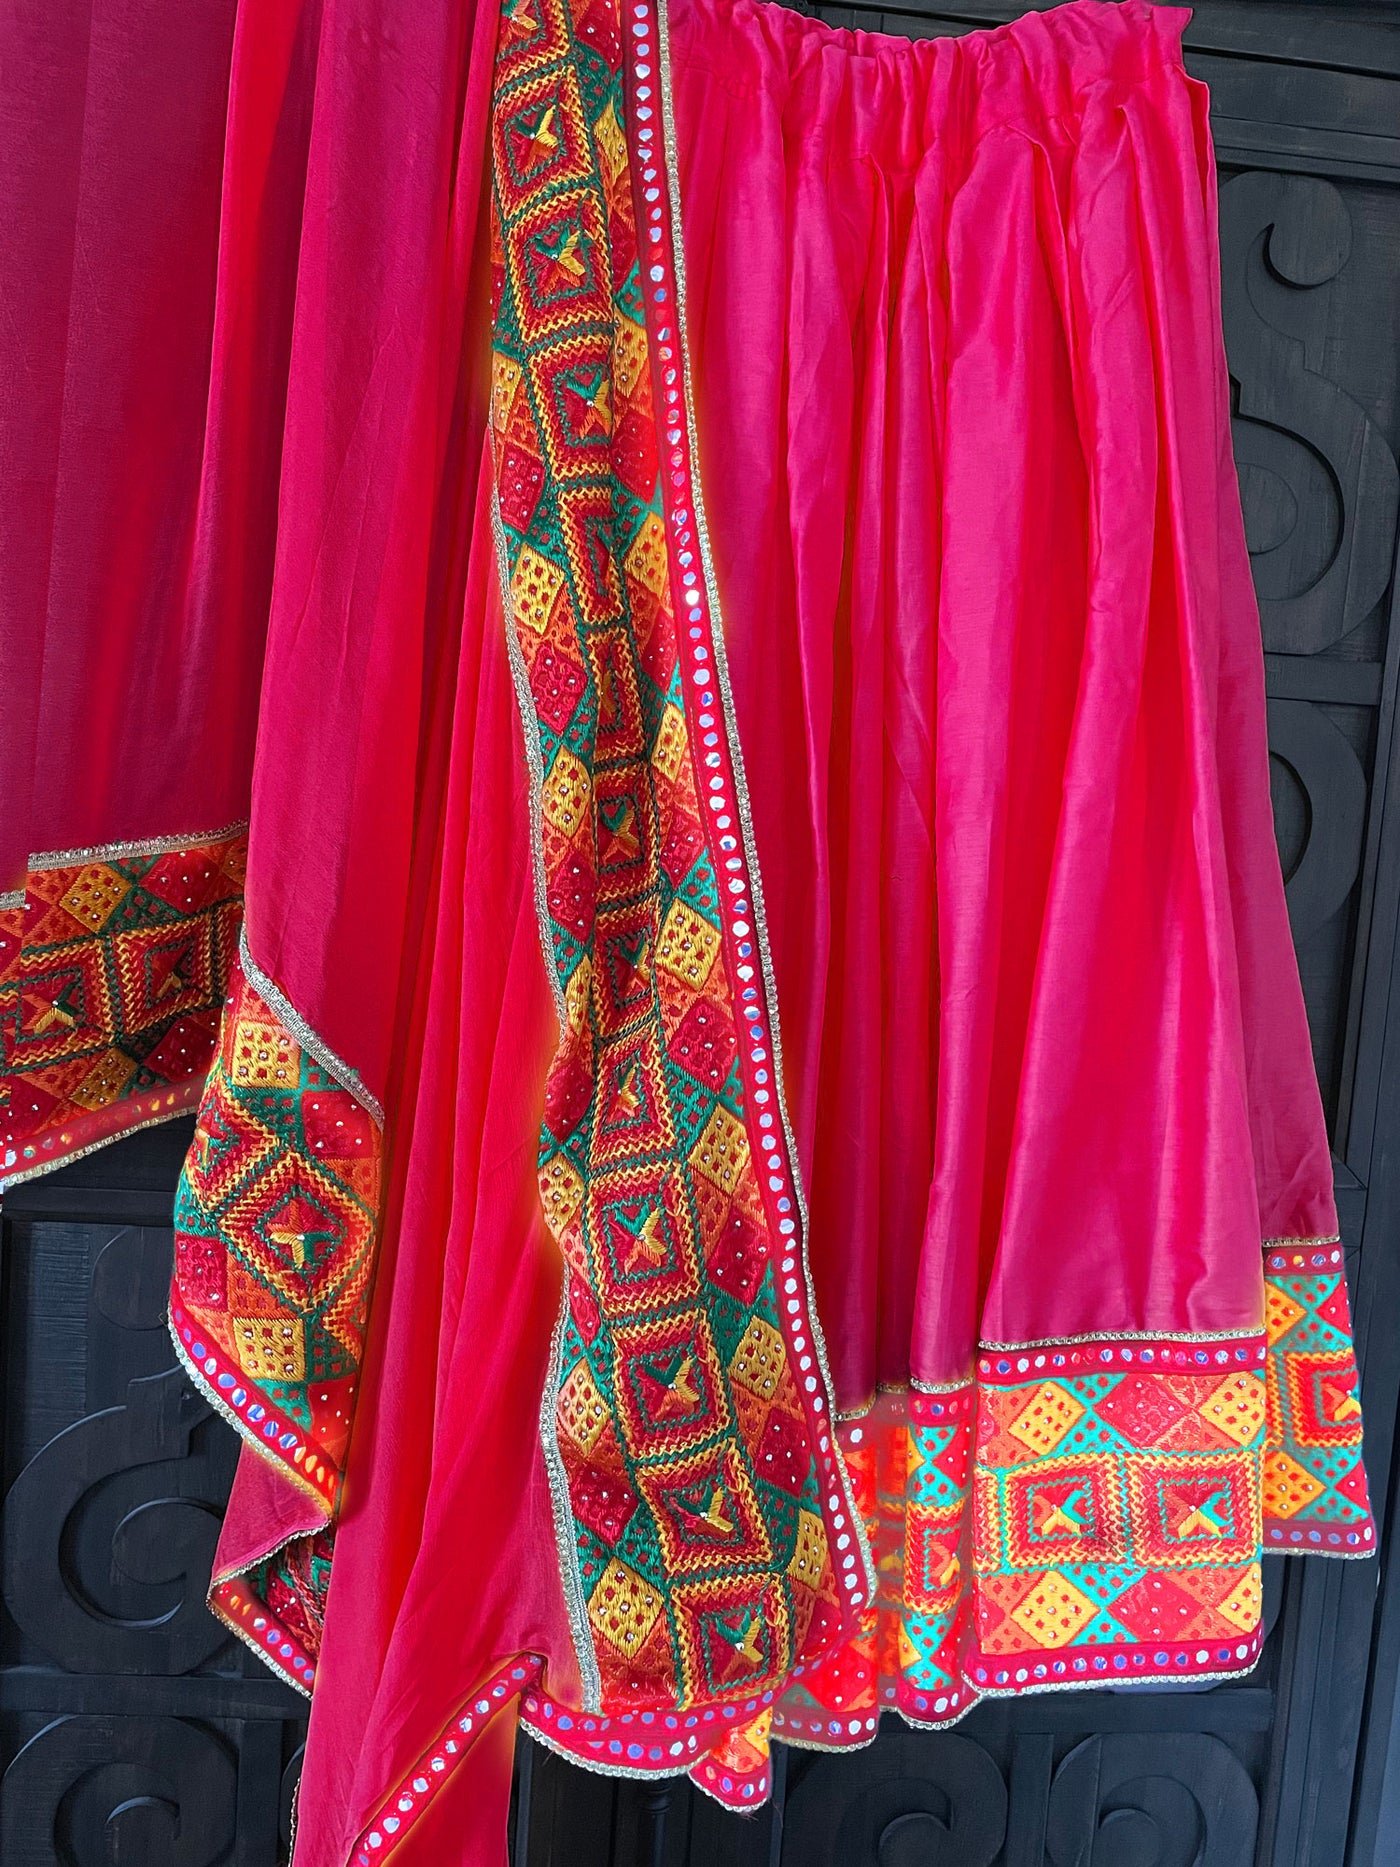 Buy Phulkari DesigN Lehenga Skirt at PinkPhulkari California